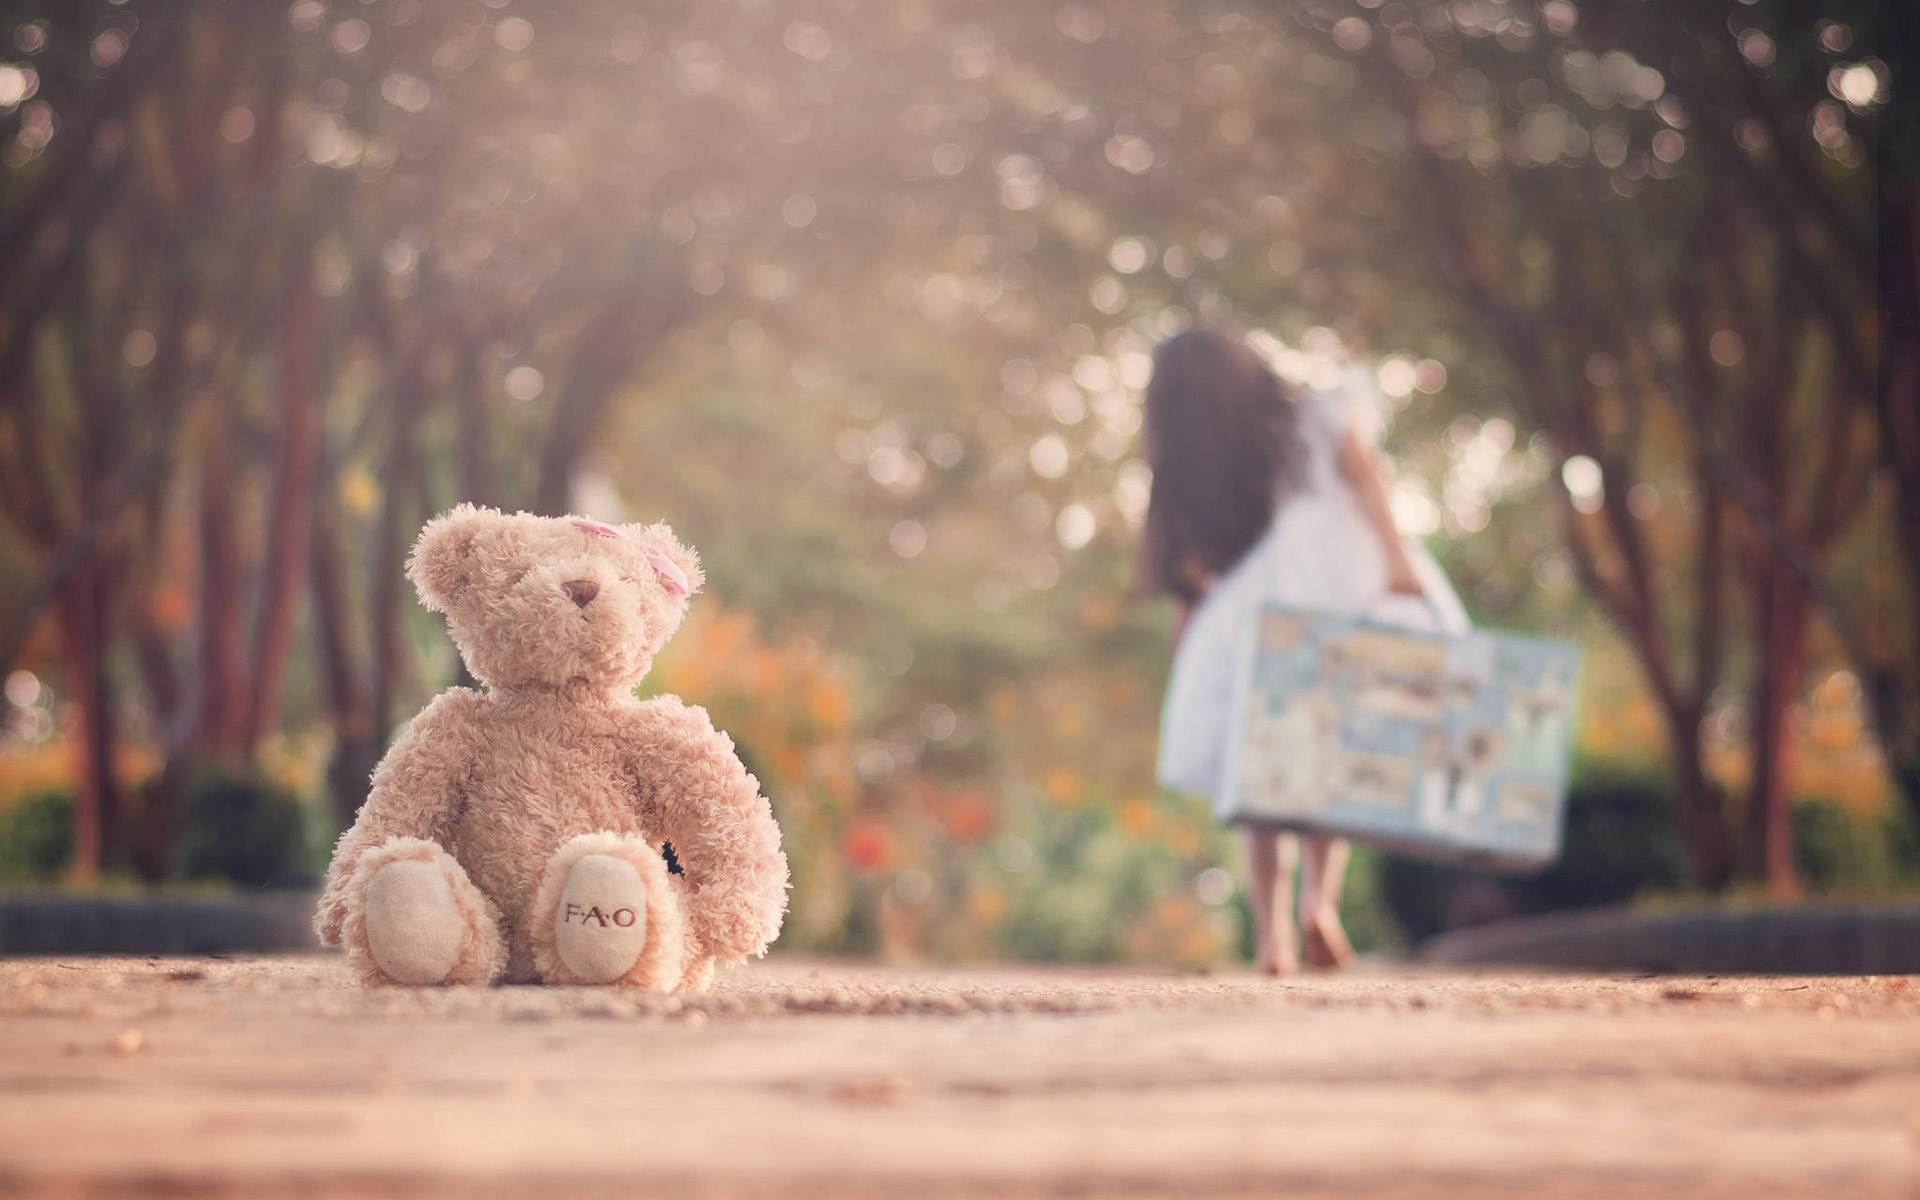 trauriger teddybär hd wallpaper,teddybär,fotografieren,spielzeug,fotografie,himmel